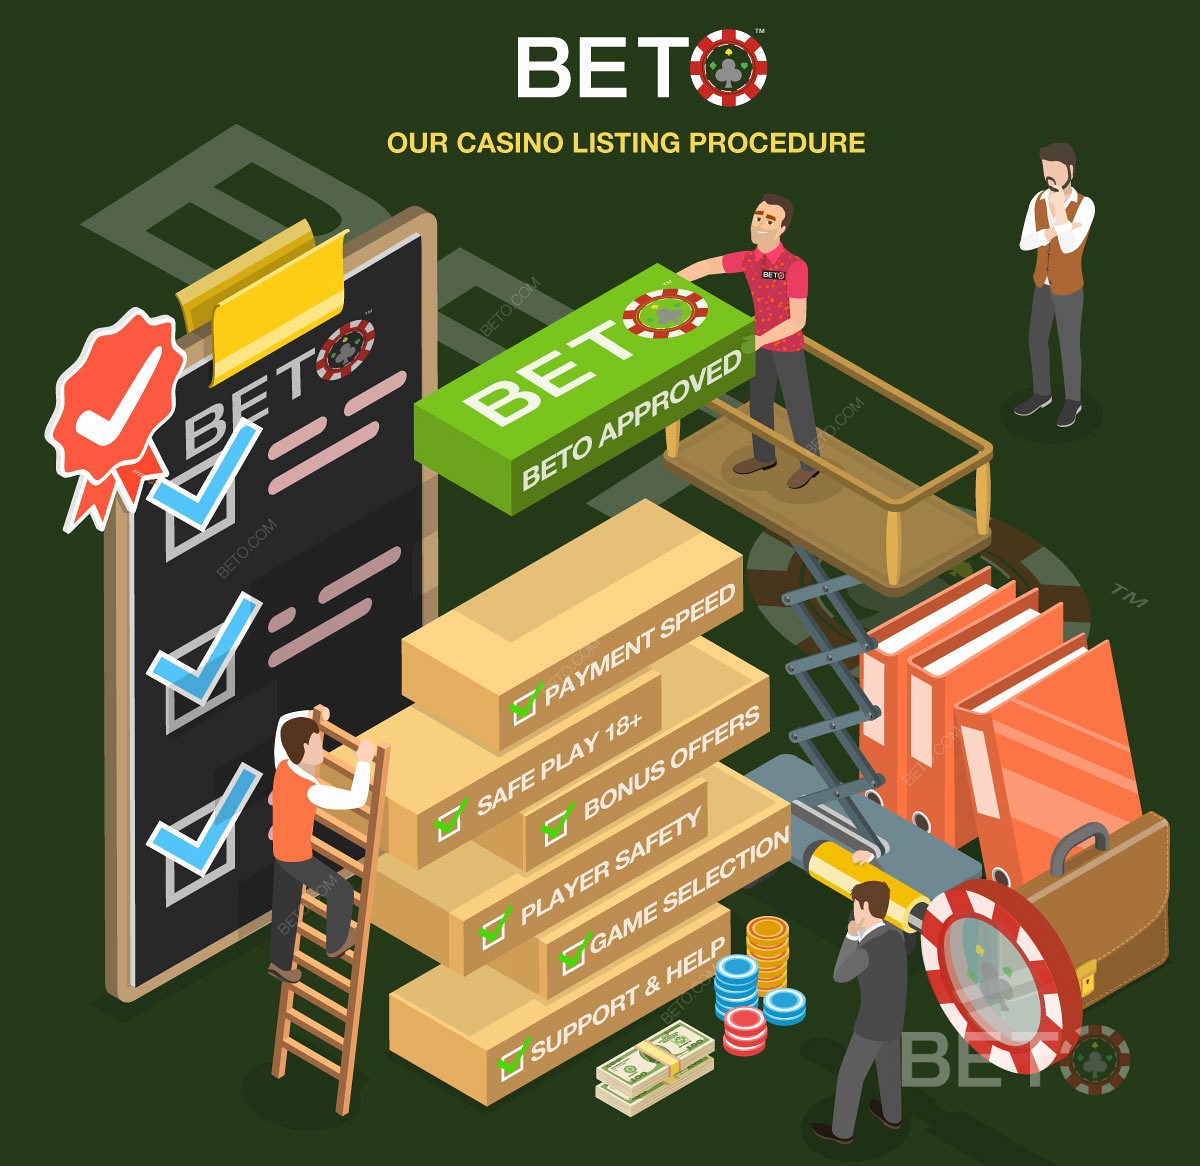 Това е начинът, по който BETO оценява потенциалните онлайн казина